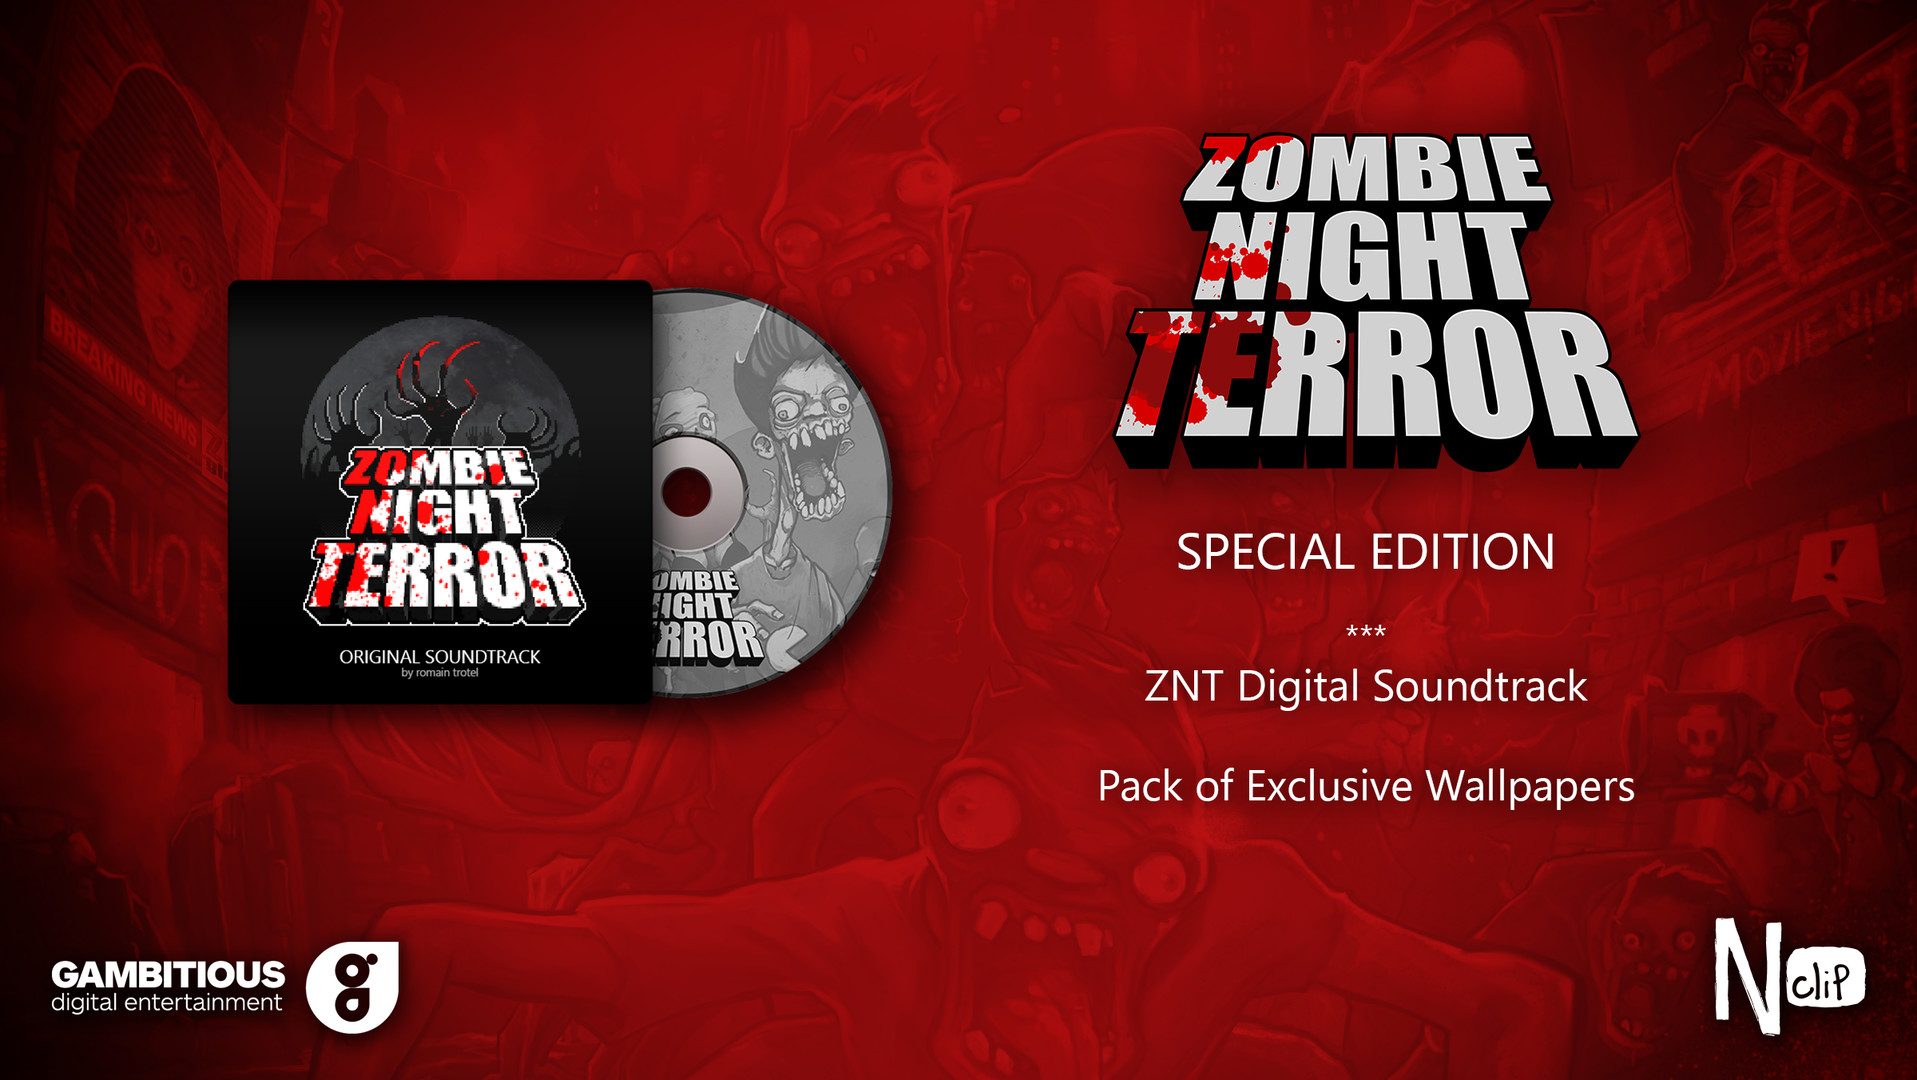 Zombie soundtrack. Игра для Switch Zombie Night Terror (русская версия). Zombie Night Terror Deluxe Edition обложка. Игра Nintendo Zombie Night Terror - Deluxe Edition.